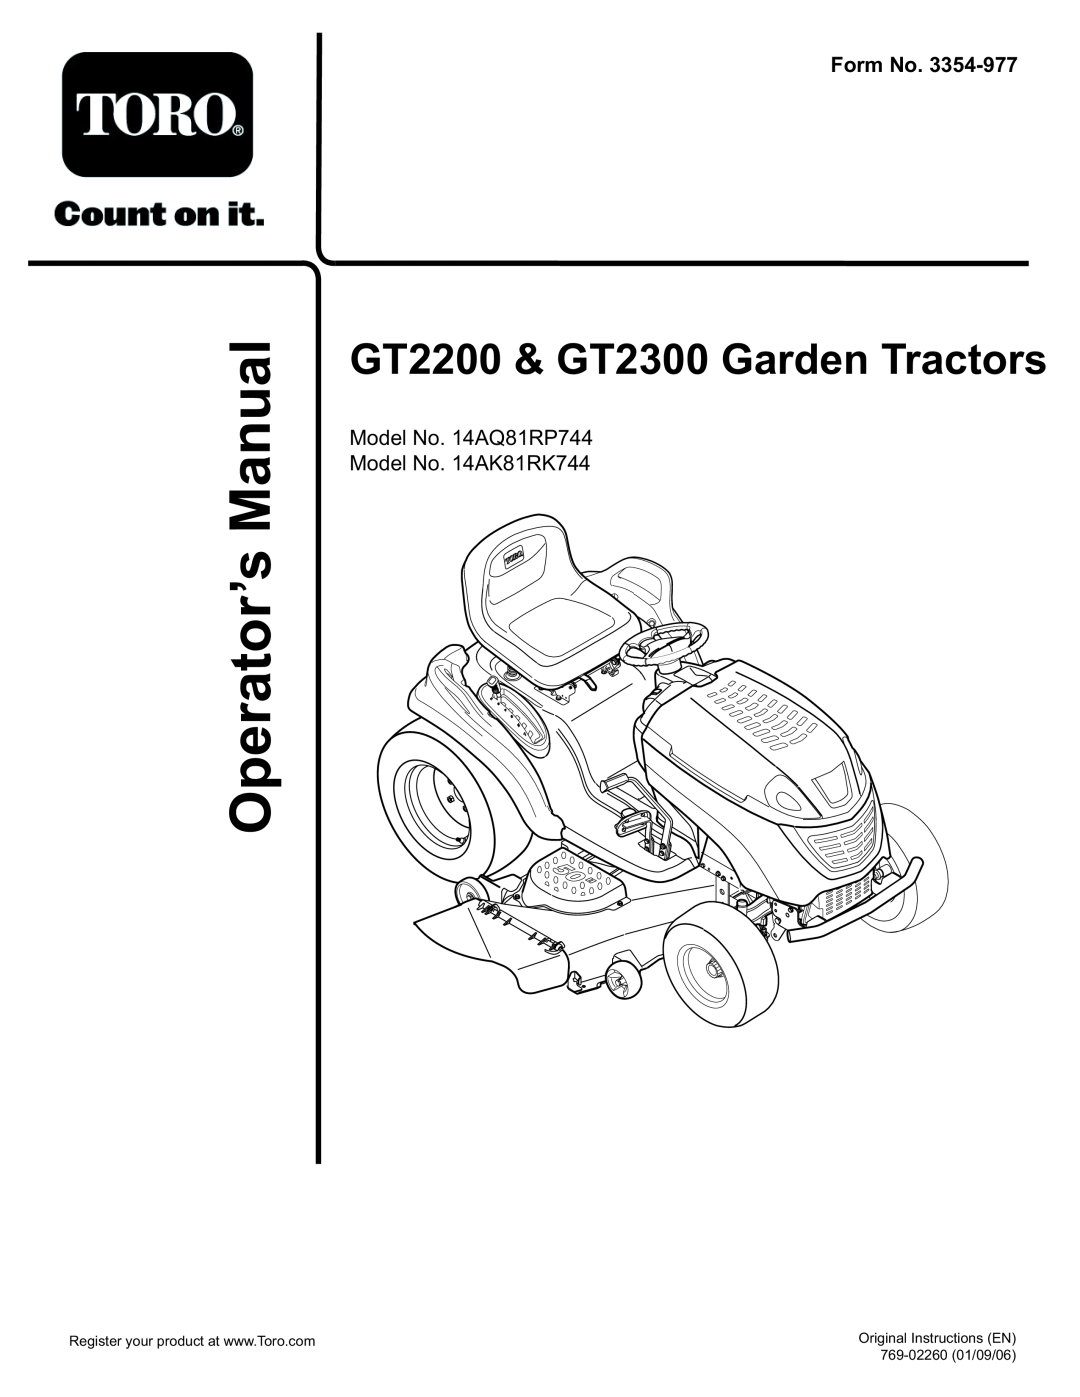 Toro 14AK81RK744, 14AQ81RP744 manual ManualOperator’s, Form No, GT2200 & GT2300 Garden Tractors, Original Instructions EN 